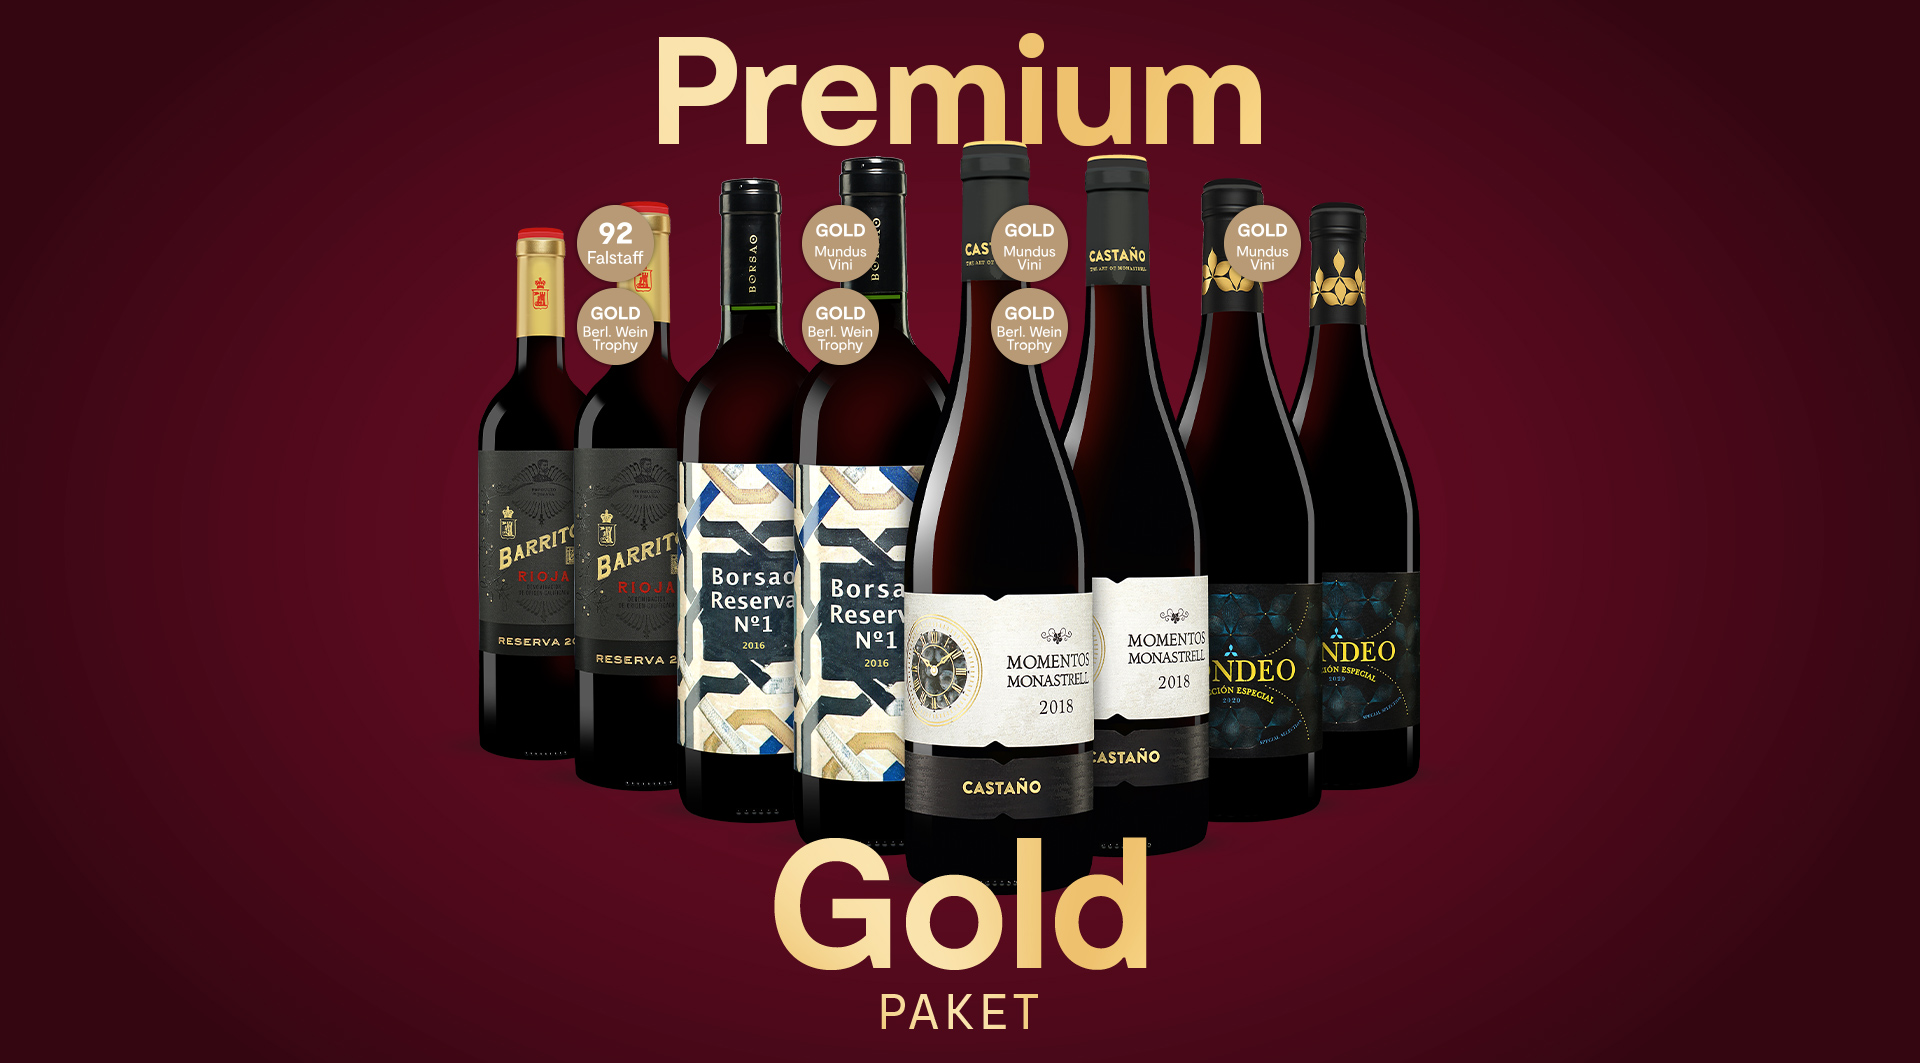 Premium Gold Paket mit 4x2 ausgezeichneten Rotweinen